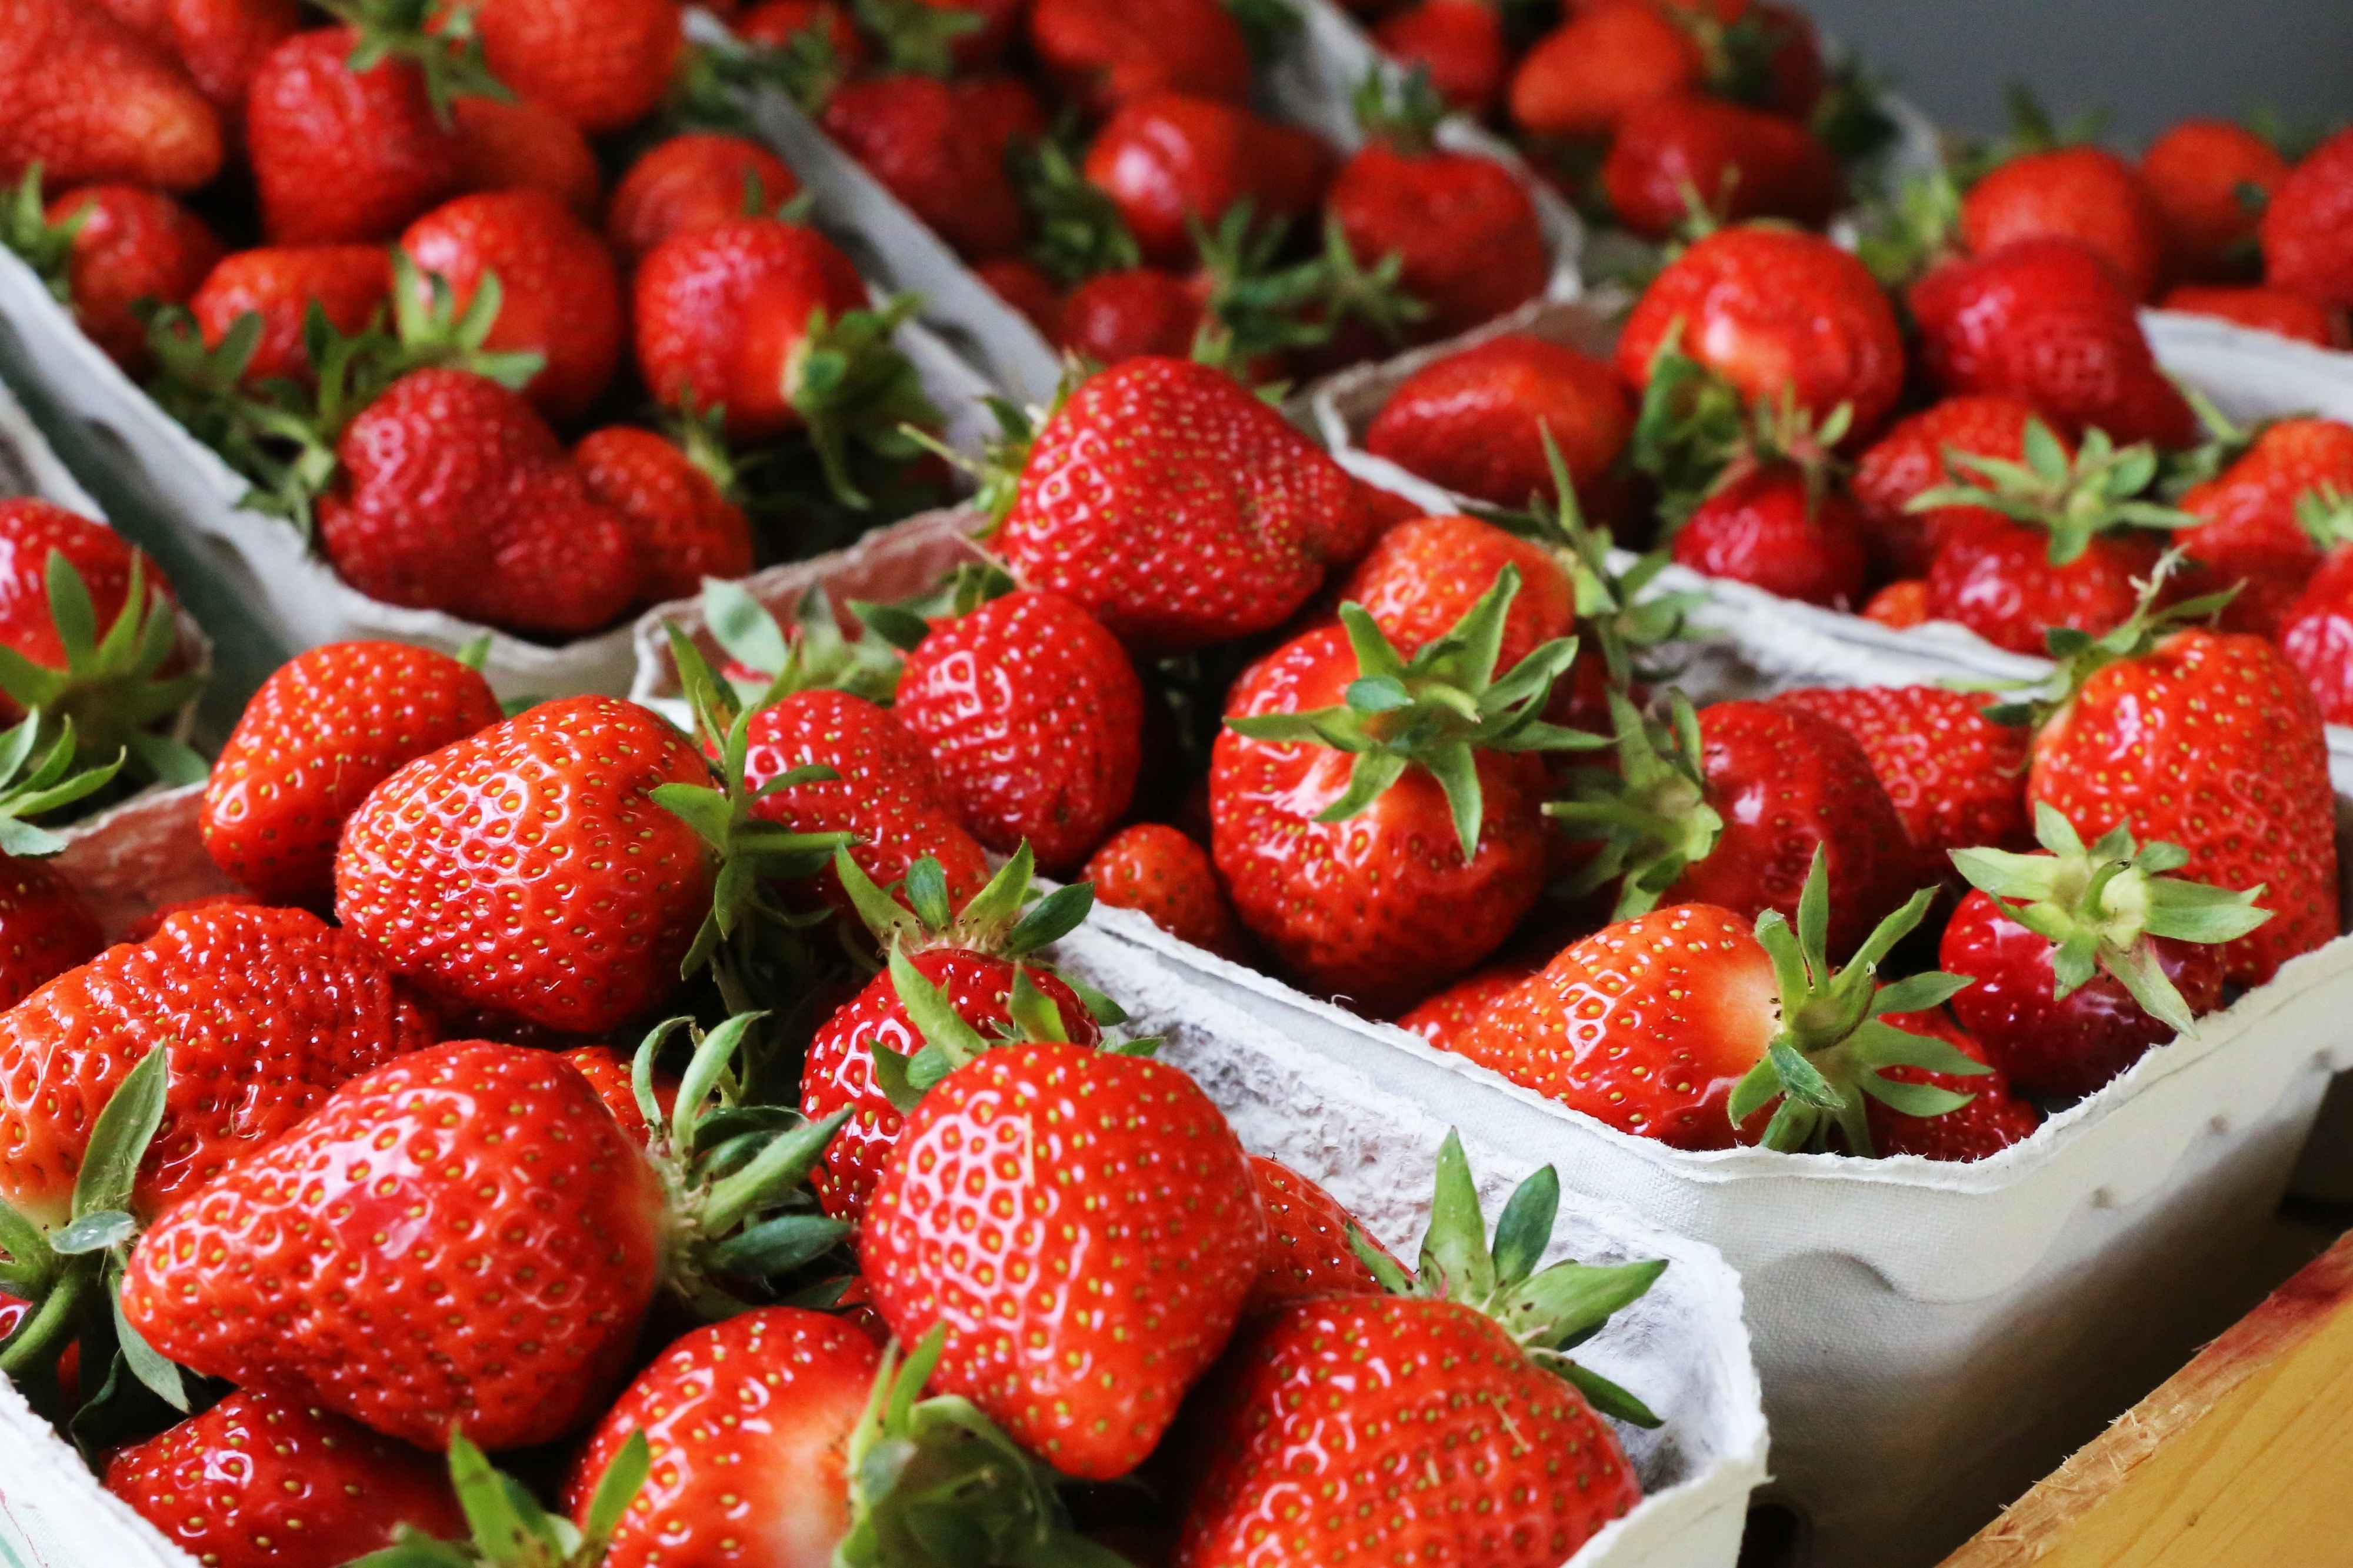 Les fraises sont les fruits les plus contaminés par les pesticides PFA, selon une étude britannique sur la contamination des fruits et légumes aux « polluants éternels ». © U. J. Alexander, Adobe Stock